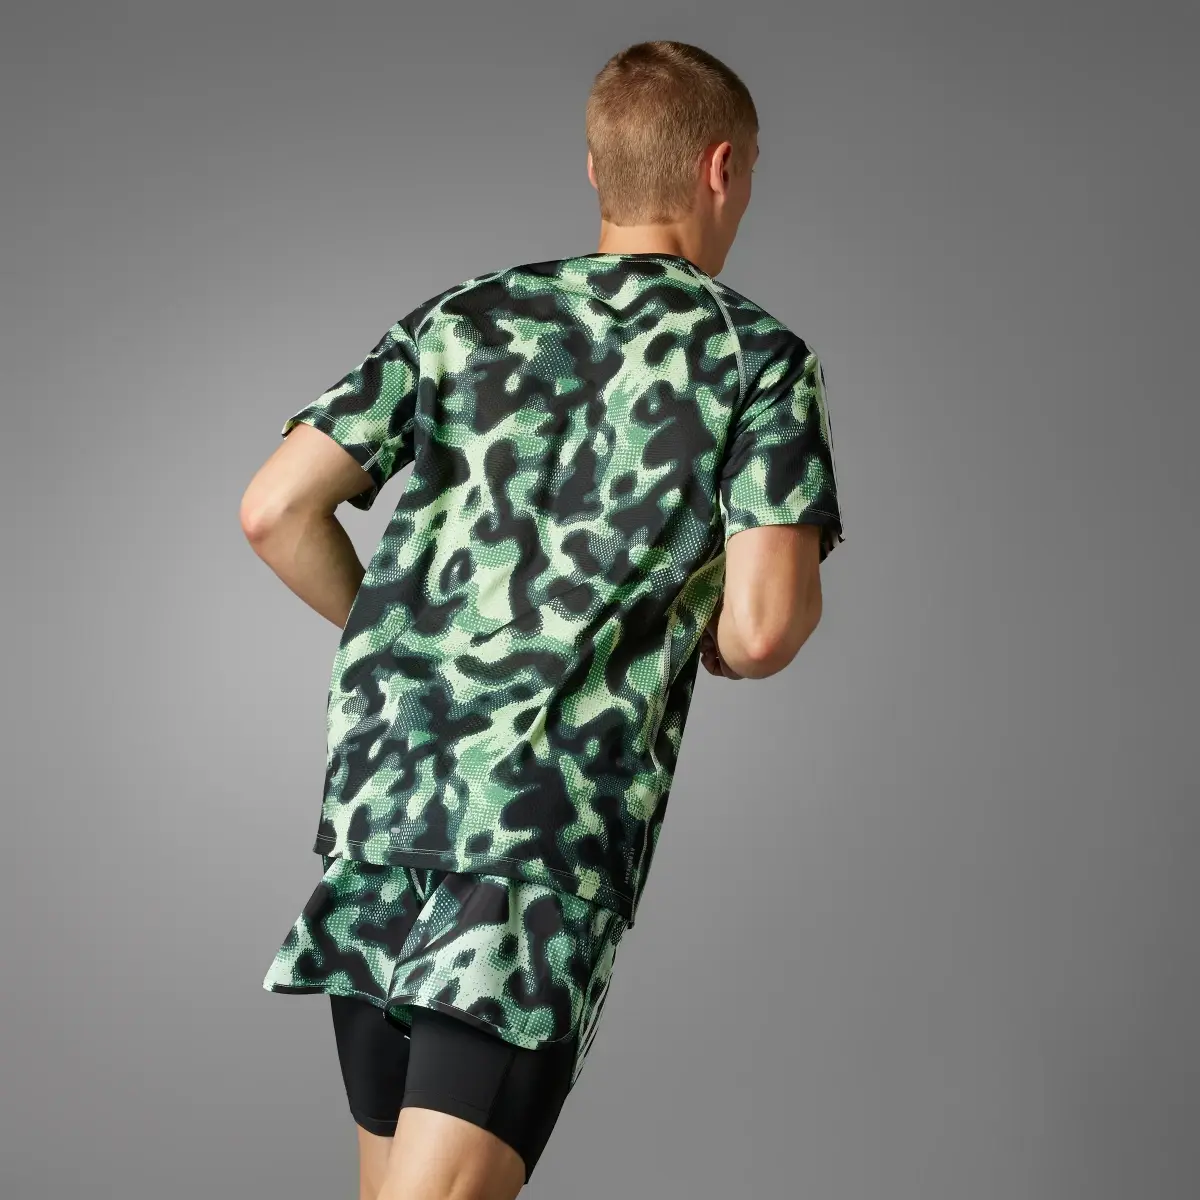 Adidas Own the Run 3-Stripes Allover Print T-Shirt. 2